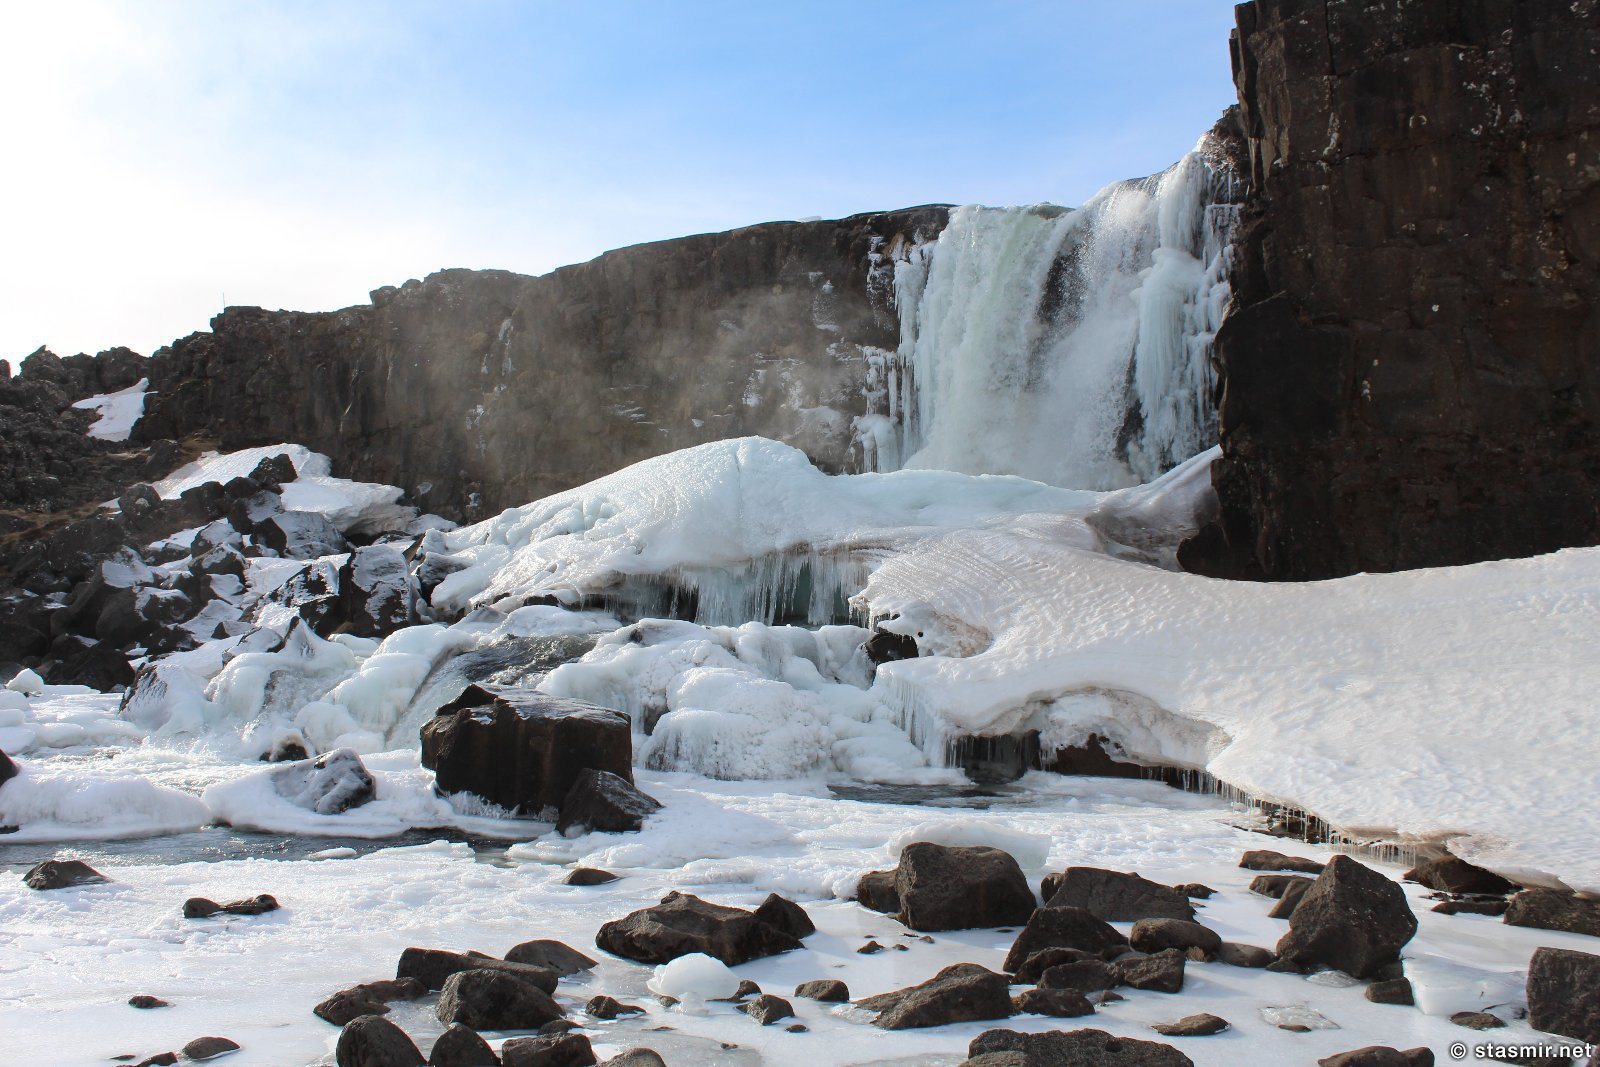 Зимняя Исландия, фото водопада из Игры престолов, фото Стасмир, photo Stasmir